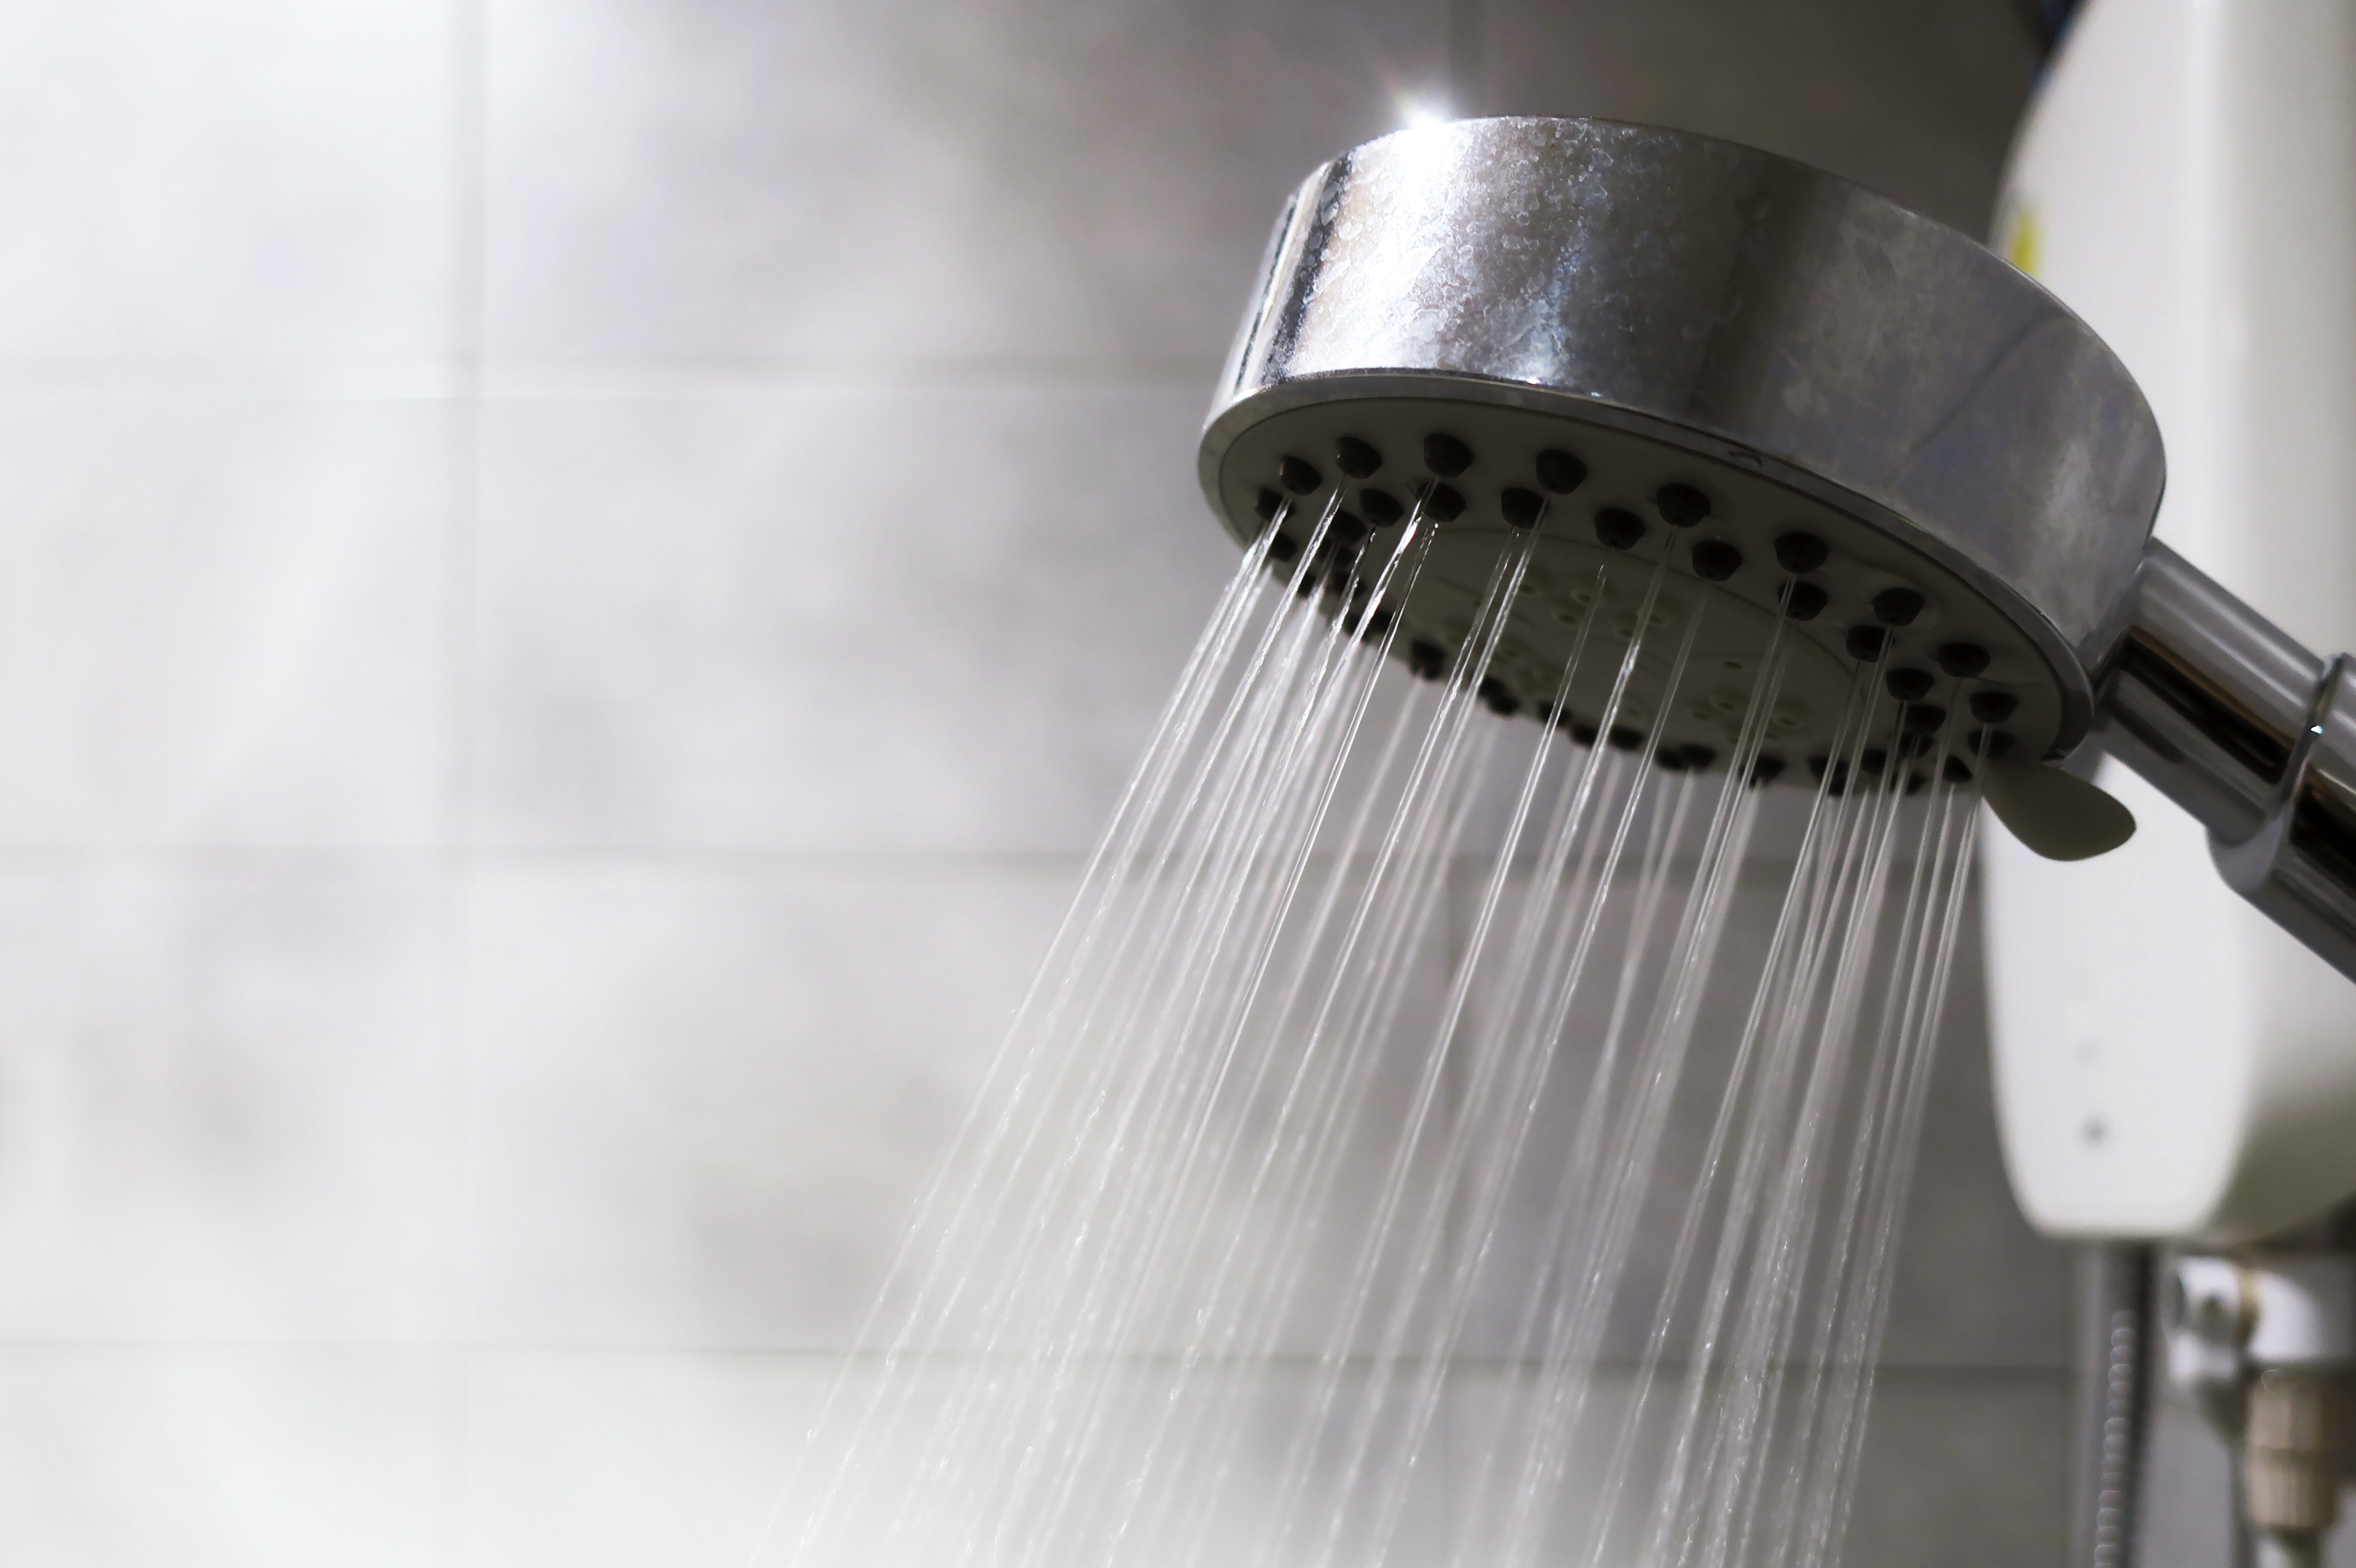 handheld showerhead spraying water